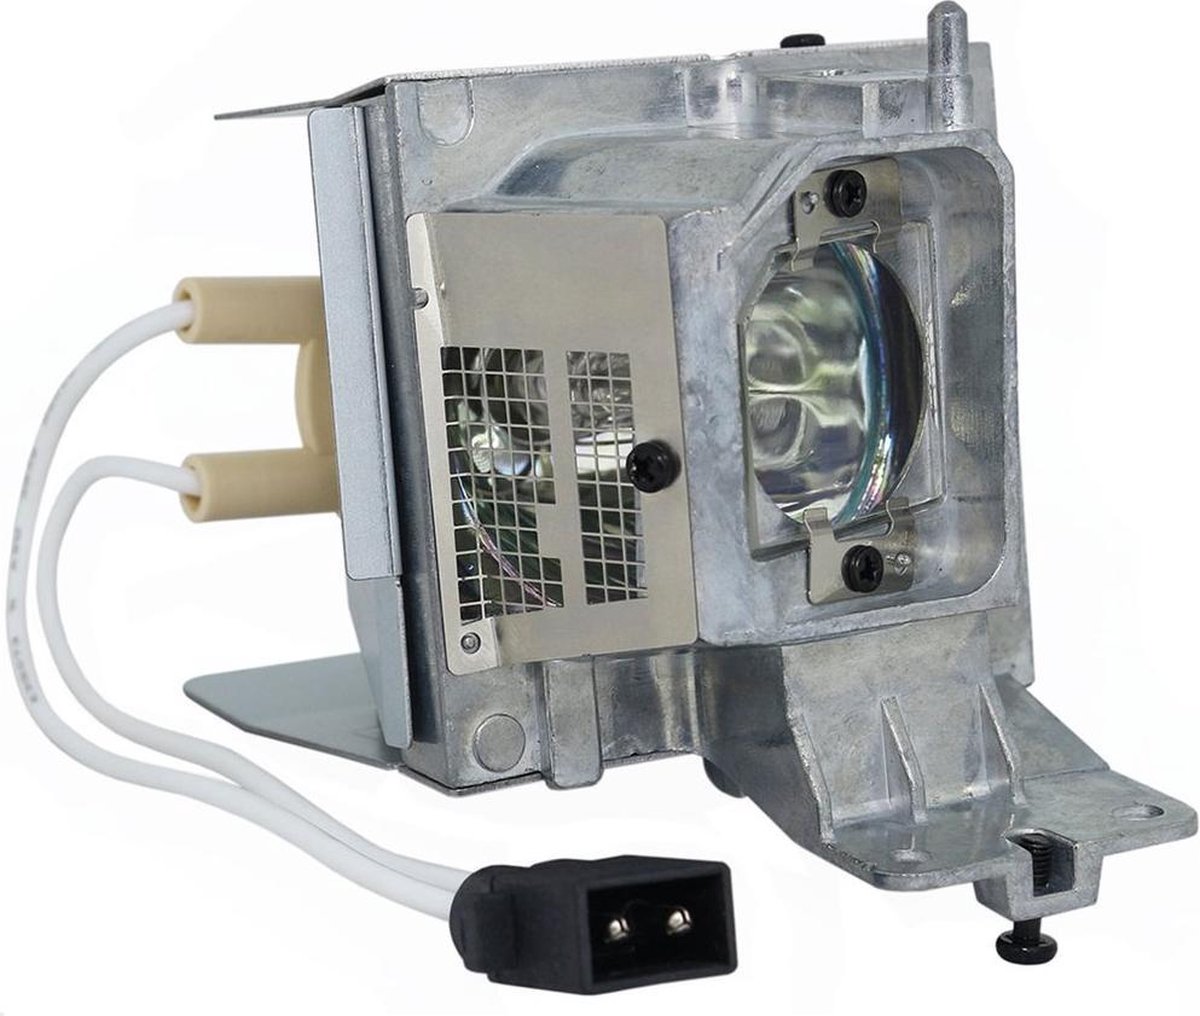 Beamerlamp geschikt voor de ACER D1P1404 beamer, lamp code MC.JLC11.001. Bevat originele UHP lamp, prestaties gelijk aan origineel.